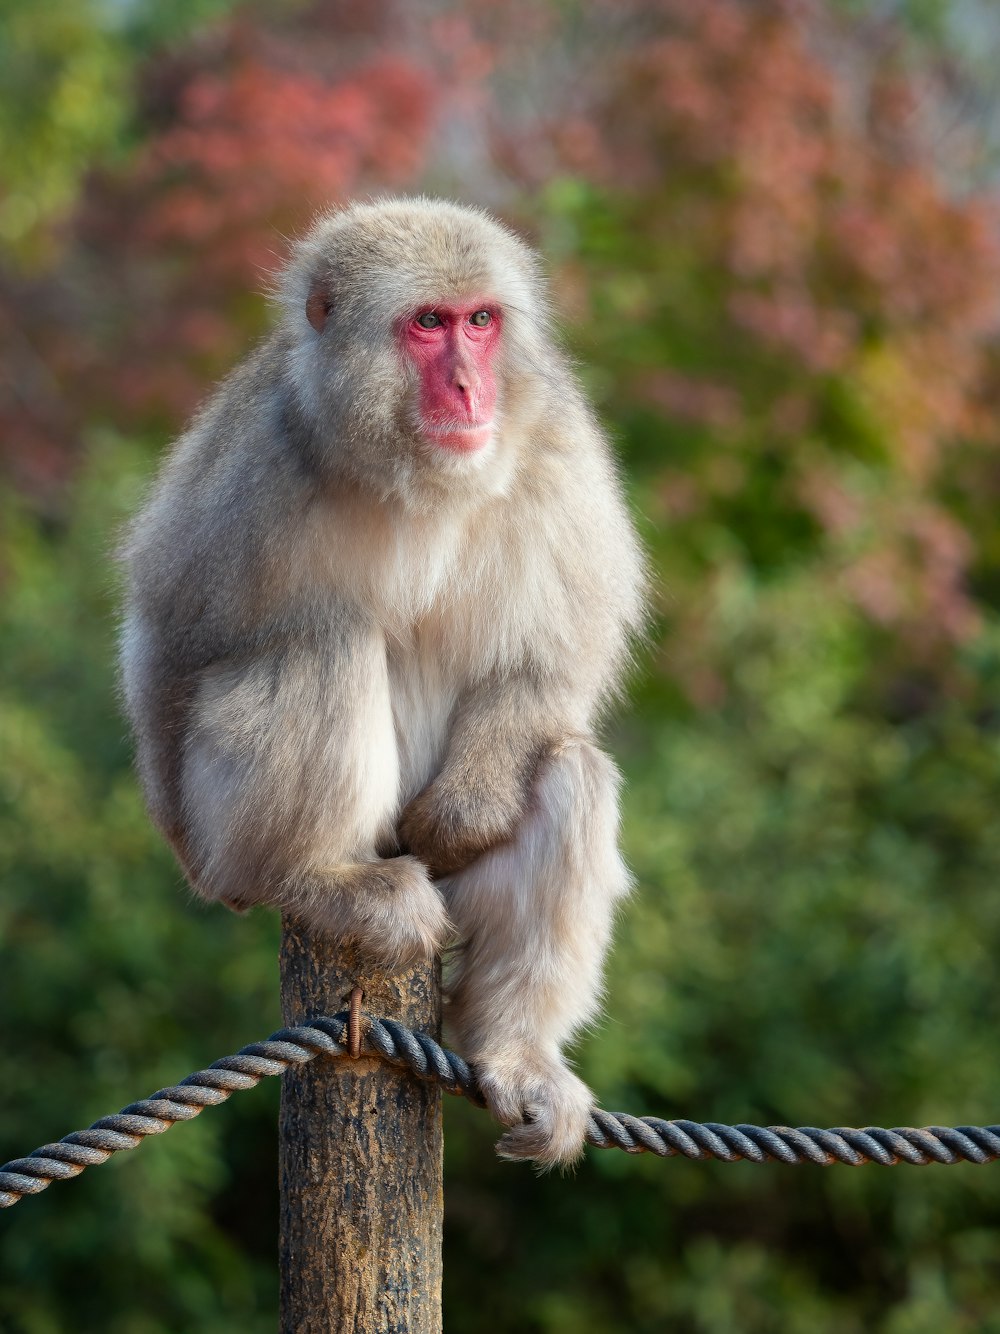 나무 기둥 위에 앉아있는 원숭이